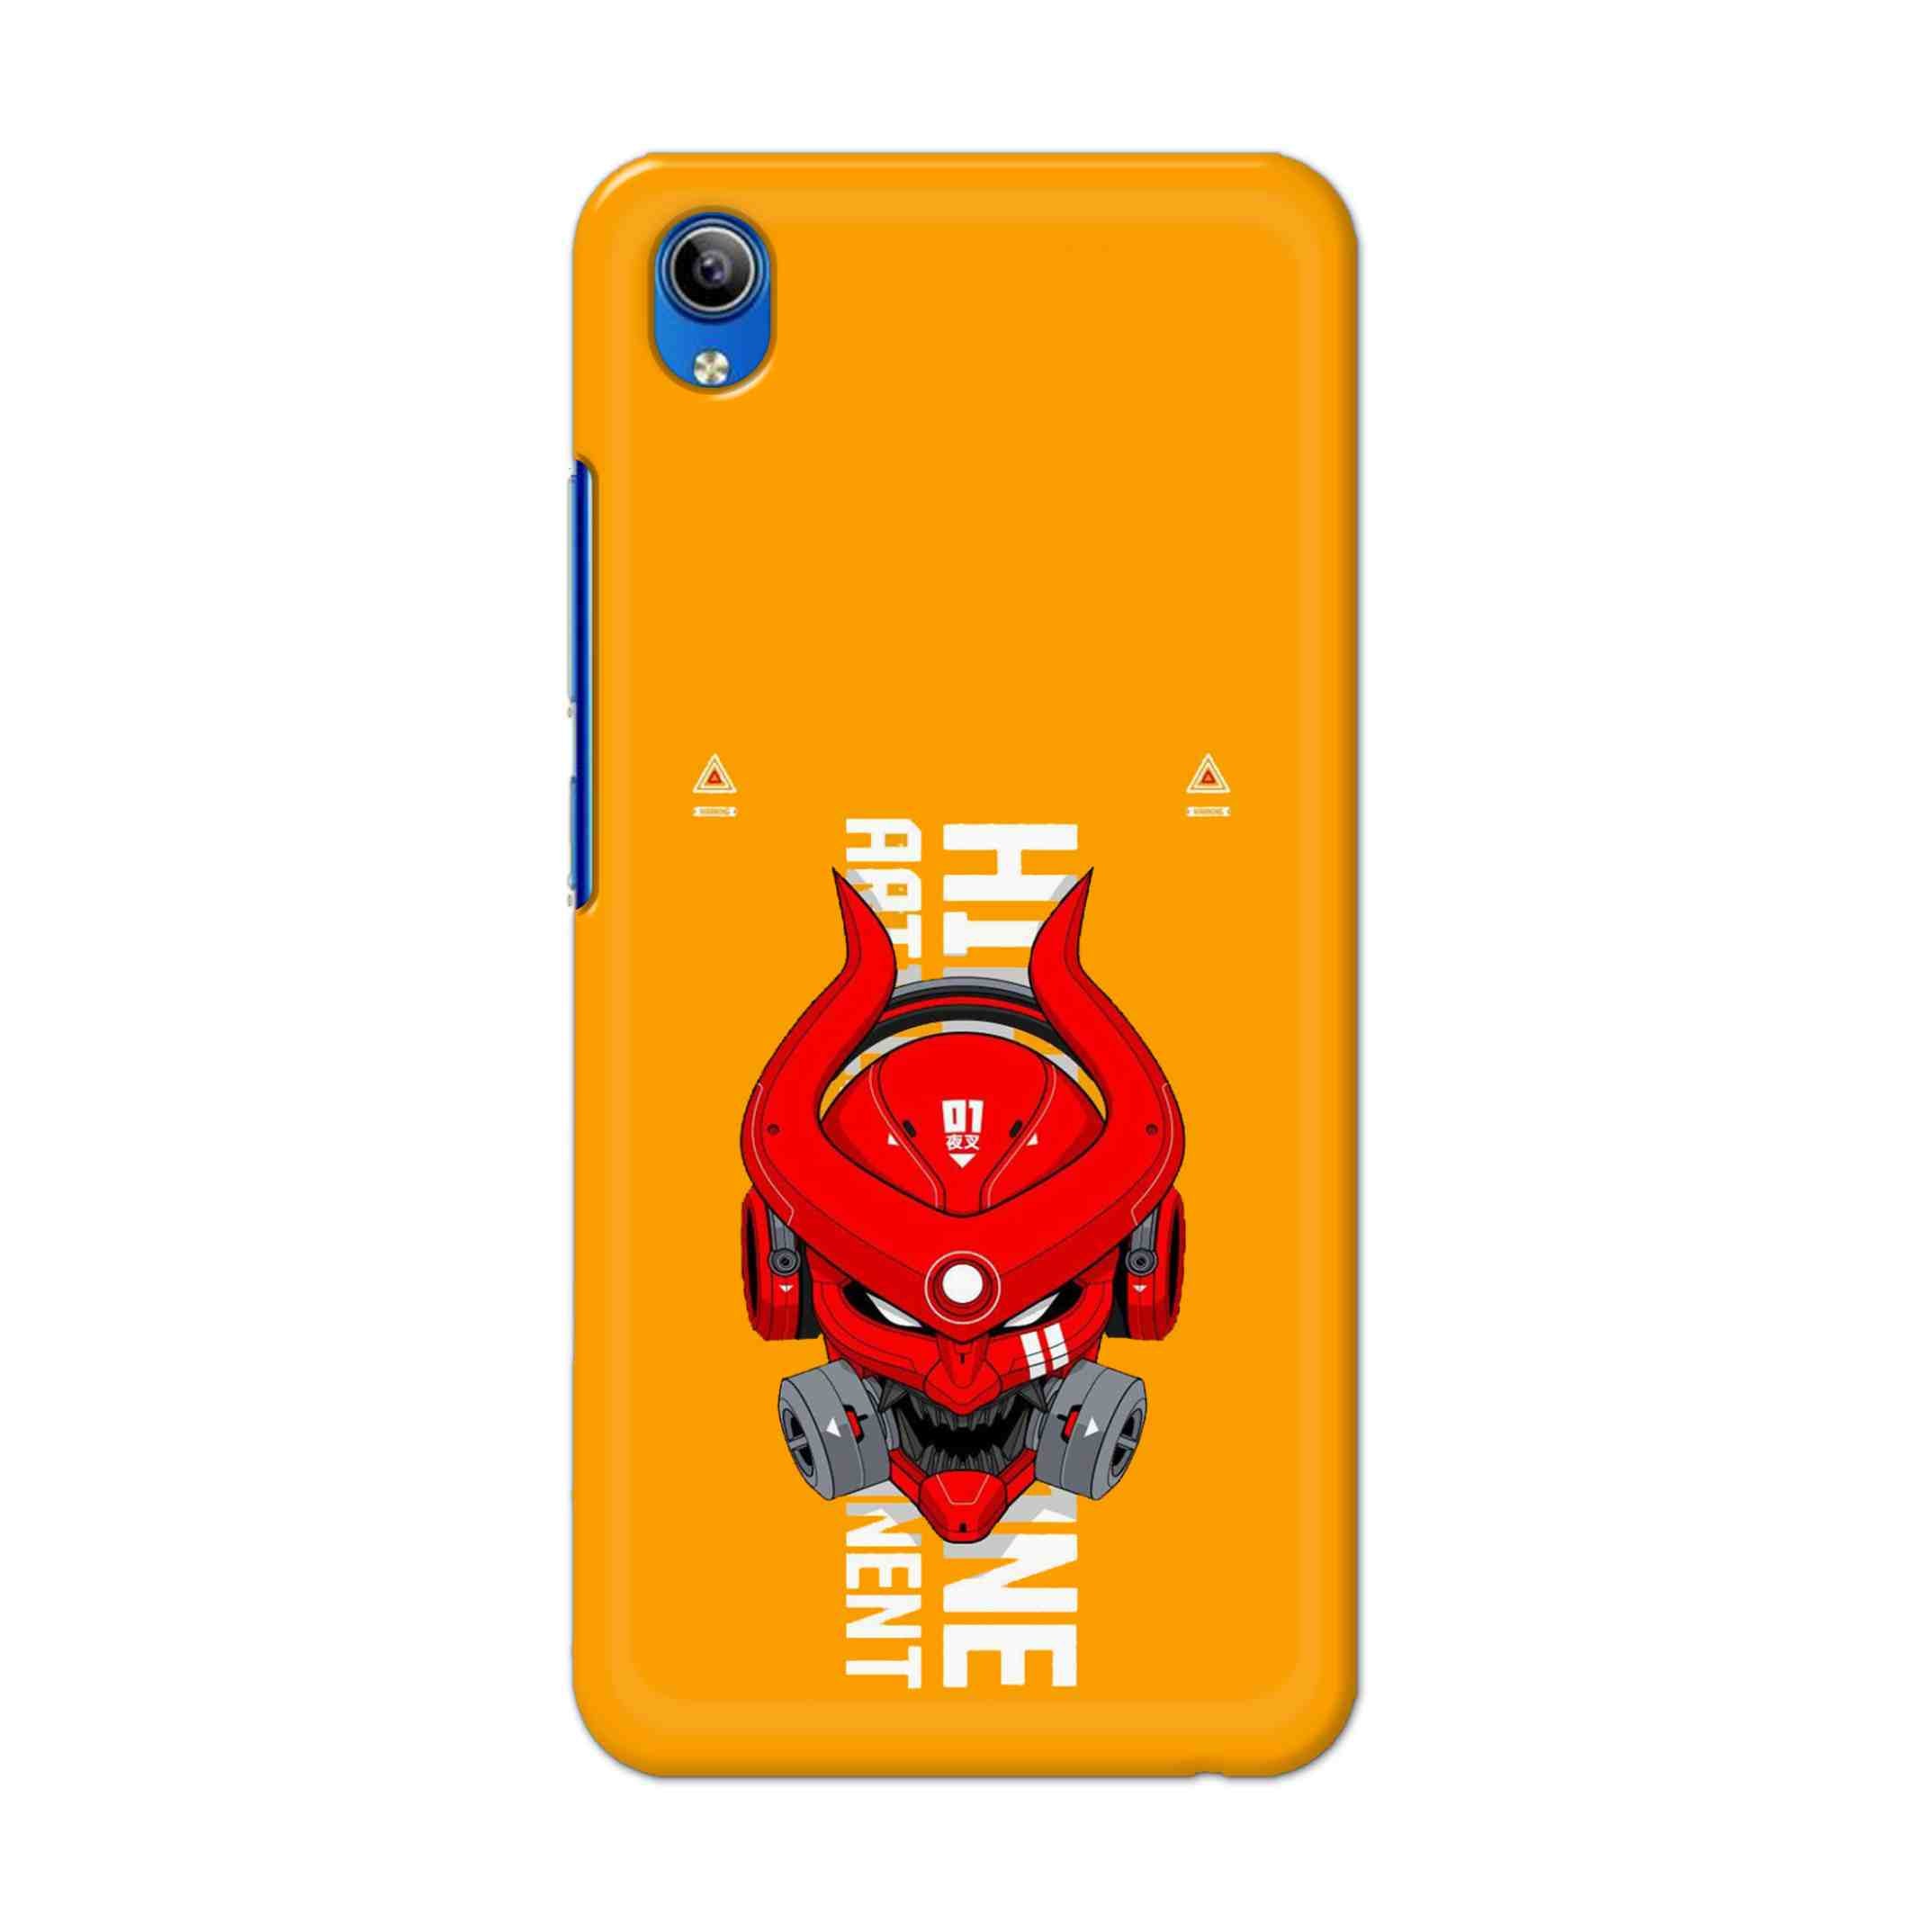 Buy Bull Skull Hard Back Mobile Phone Case Cover For Vivo Y91i Online